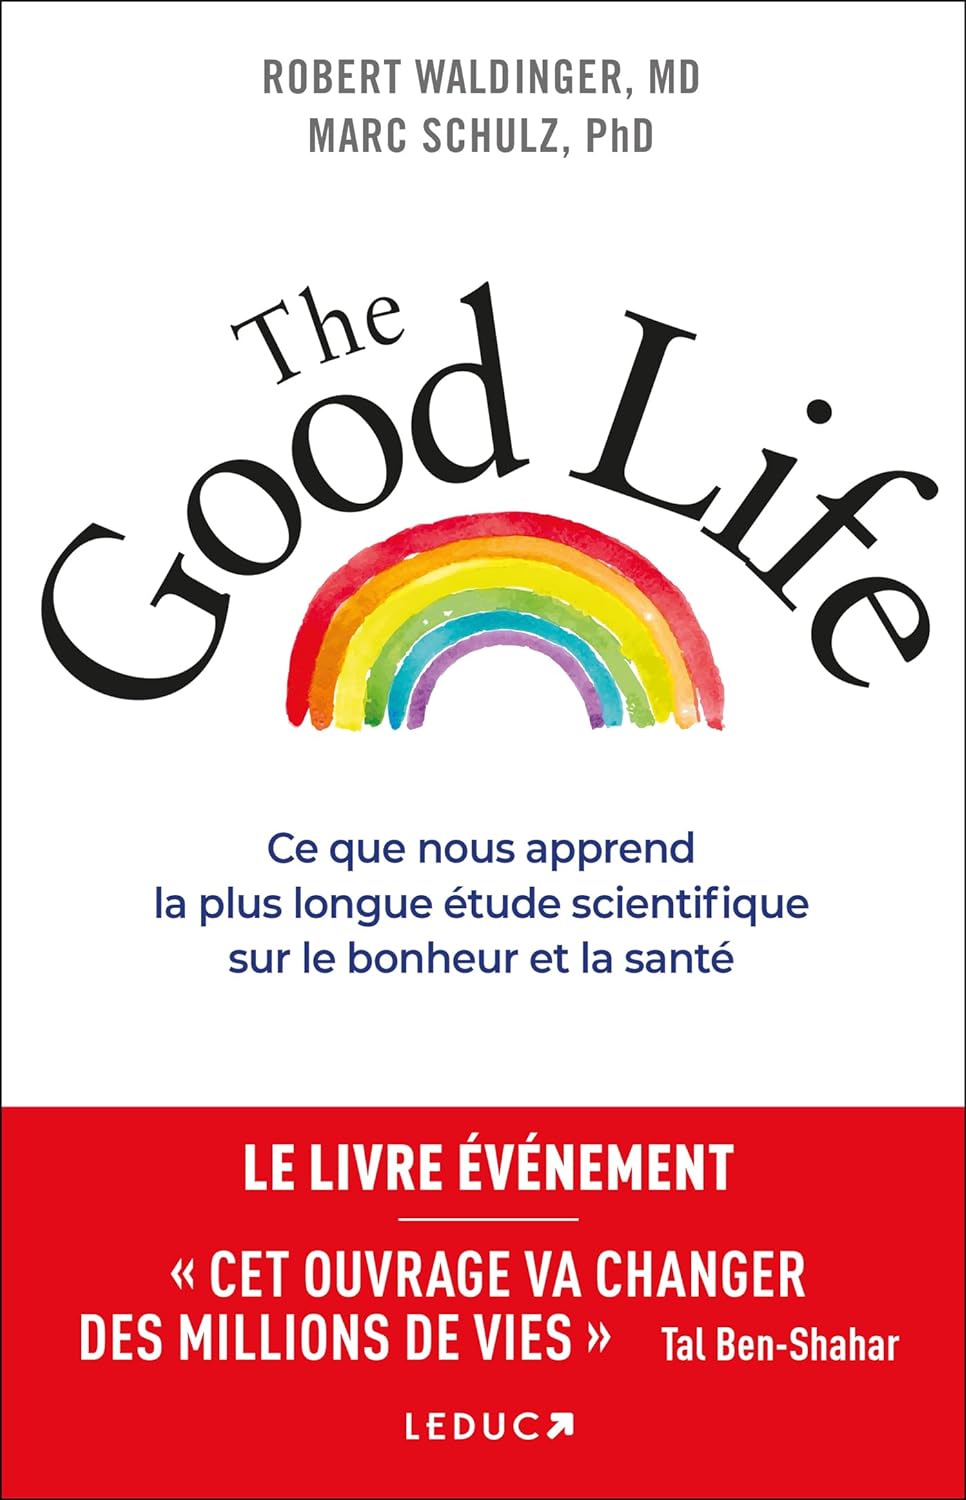 Couverture "The Good Life" de Robert Waldinger et Marc Schulz